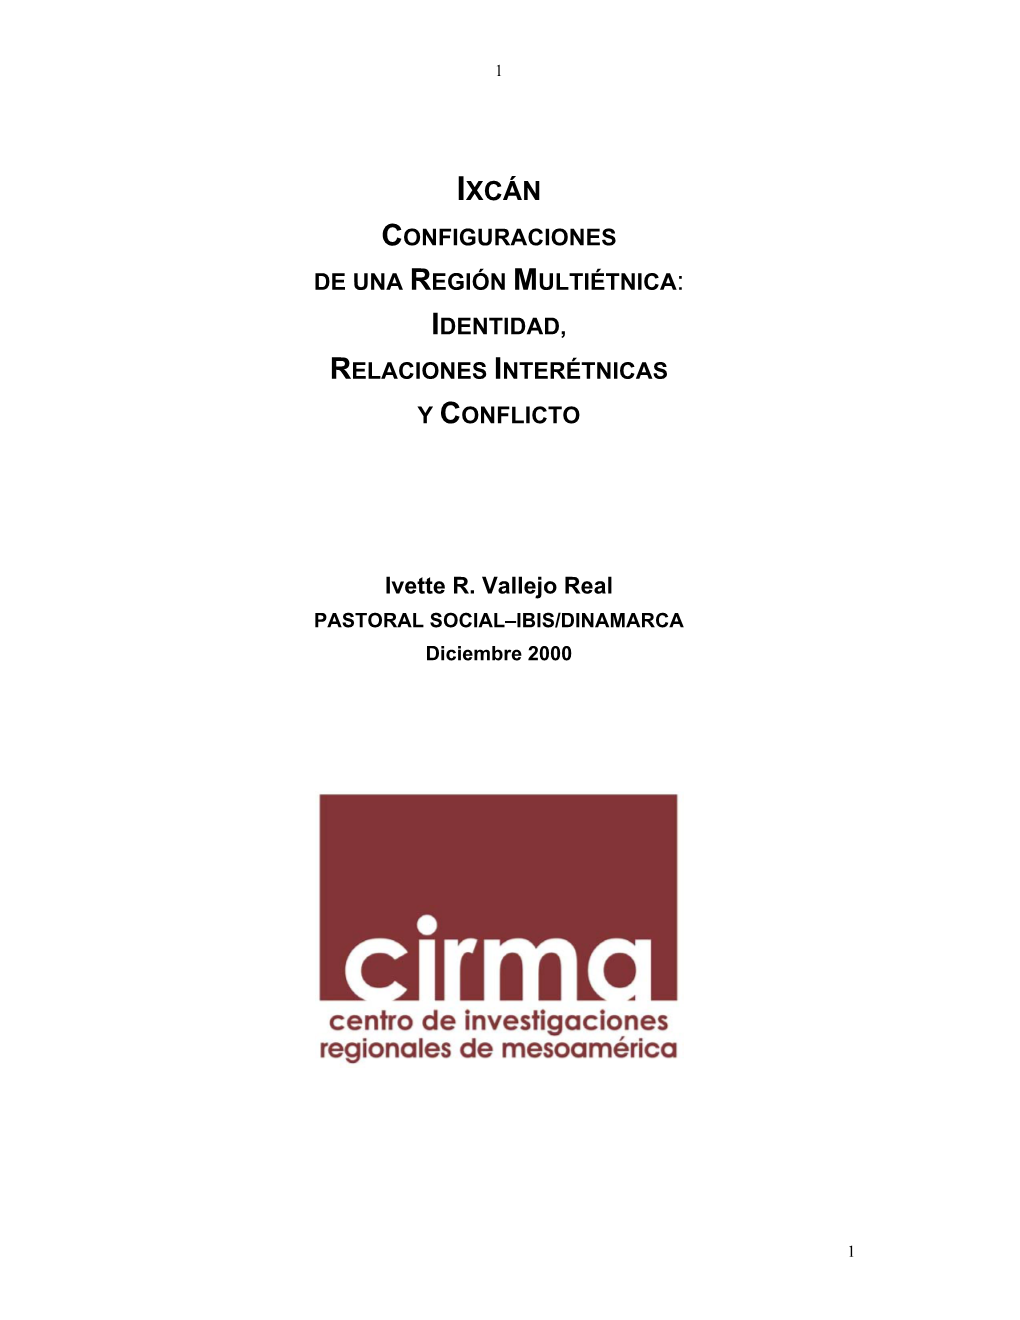 “ Ixcan: Configuraciones De Una Region Multiétnica”